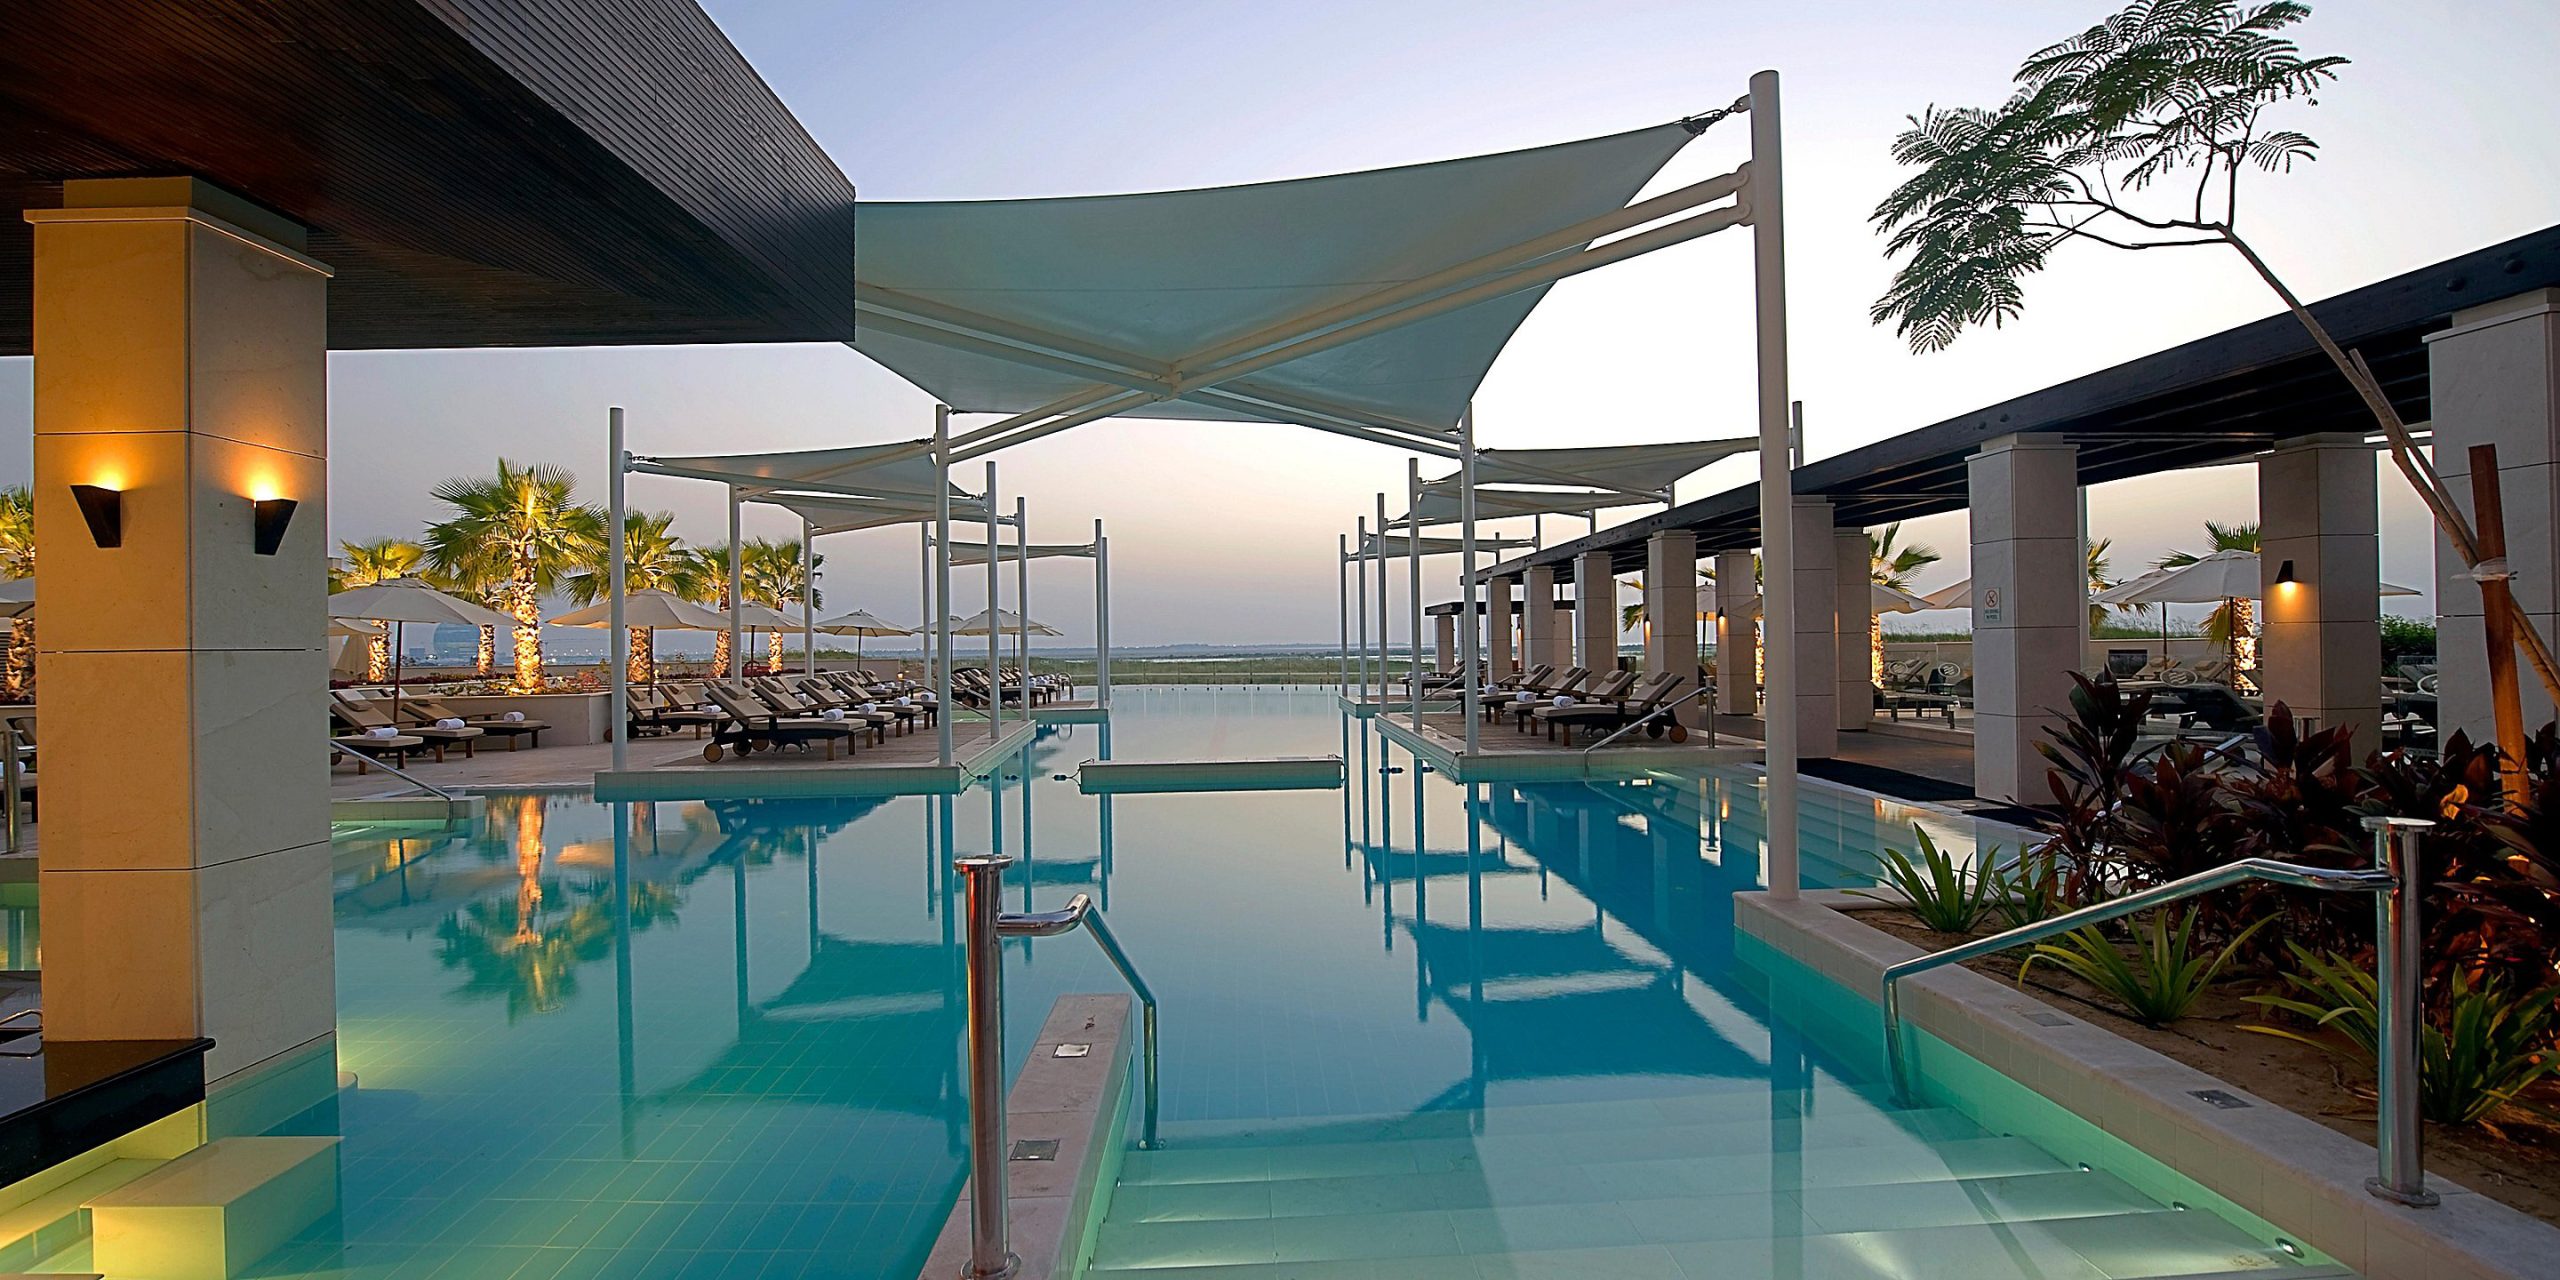 Abu Dhabi, Crowne Plaza Yas Island utsikt över poolen med horisonten i bakgrunden.